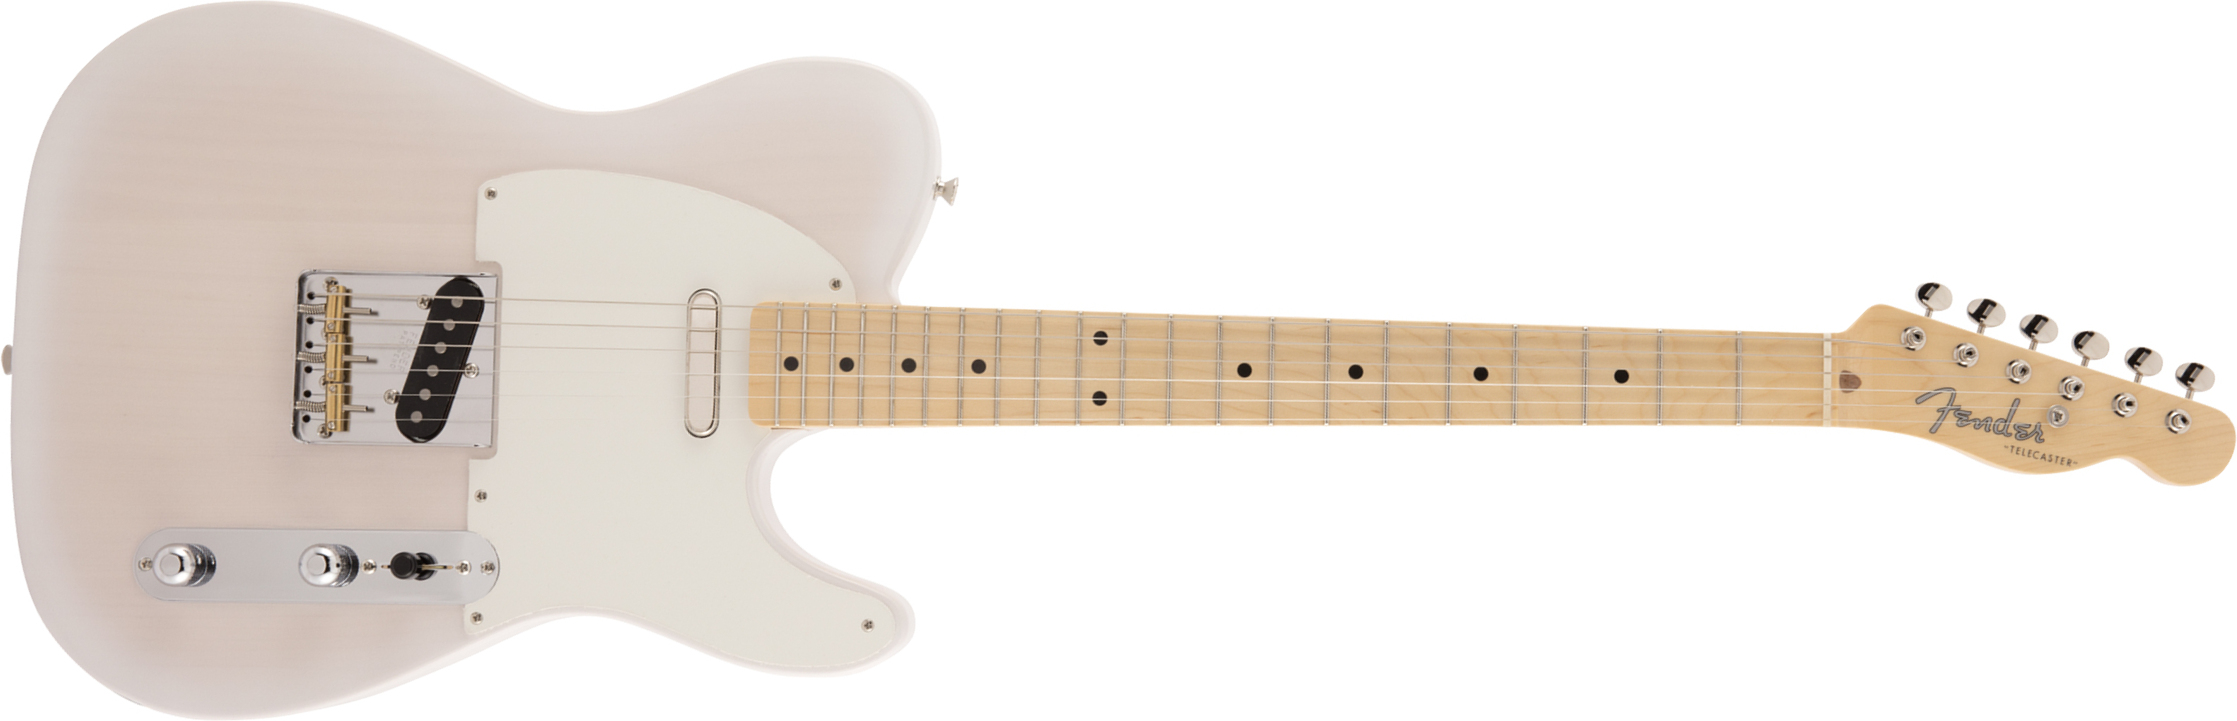 Fender Tele Traditional 50s Jap Mn - White Blonde - Guitarra eléctrica con forma de tel - Main picture